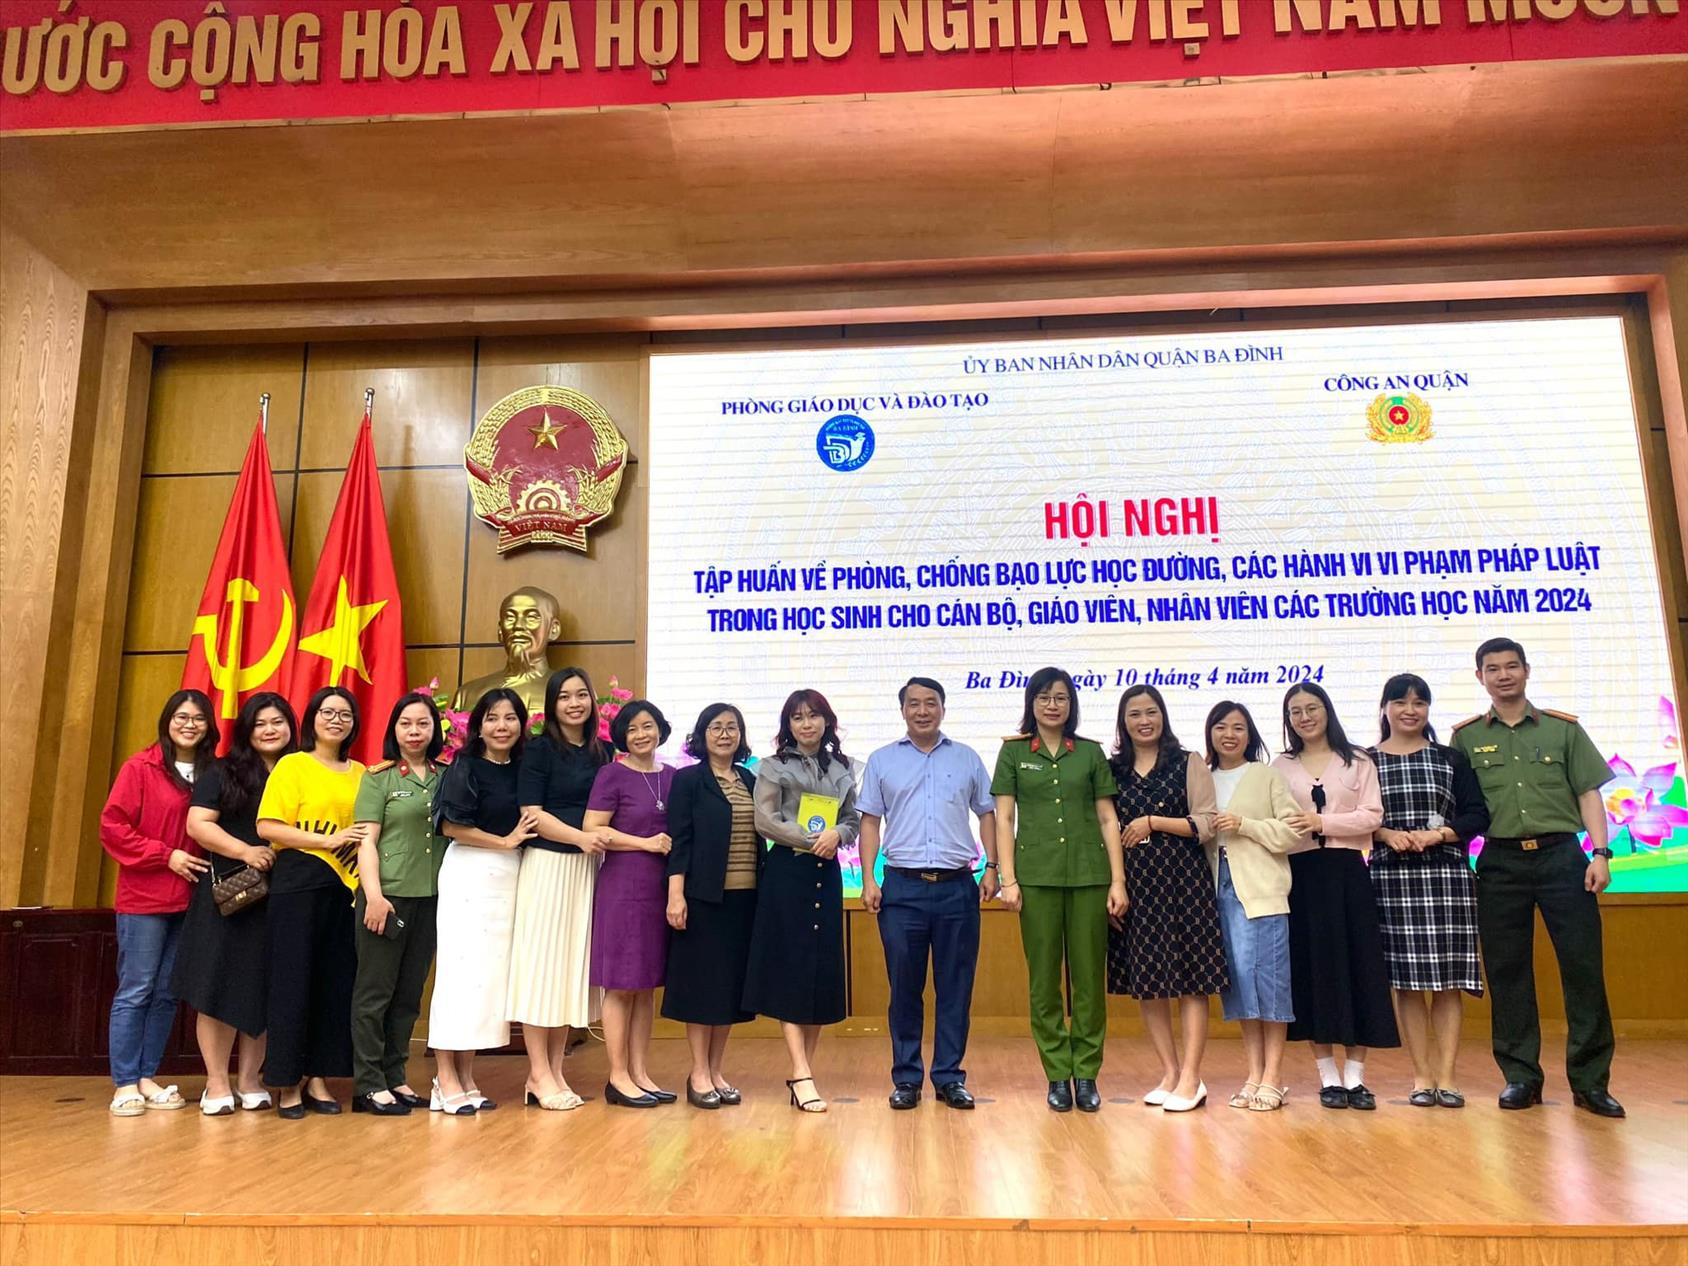 Cán bộ, giáo viên trường tiểu học Nguyễn bá Ngọc tham dự Hội nghị Tuyên truyền pháp luật cho cán bộ, giáo viên ngành Giáo dục quận Ba Đình